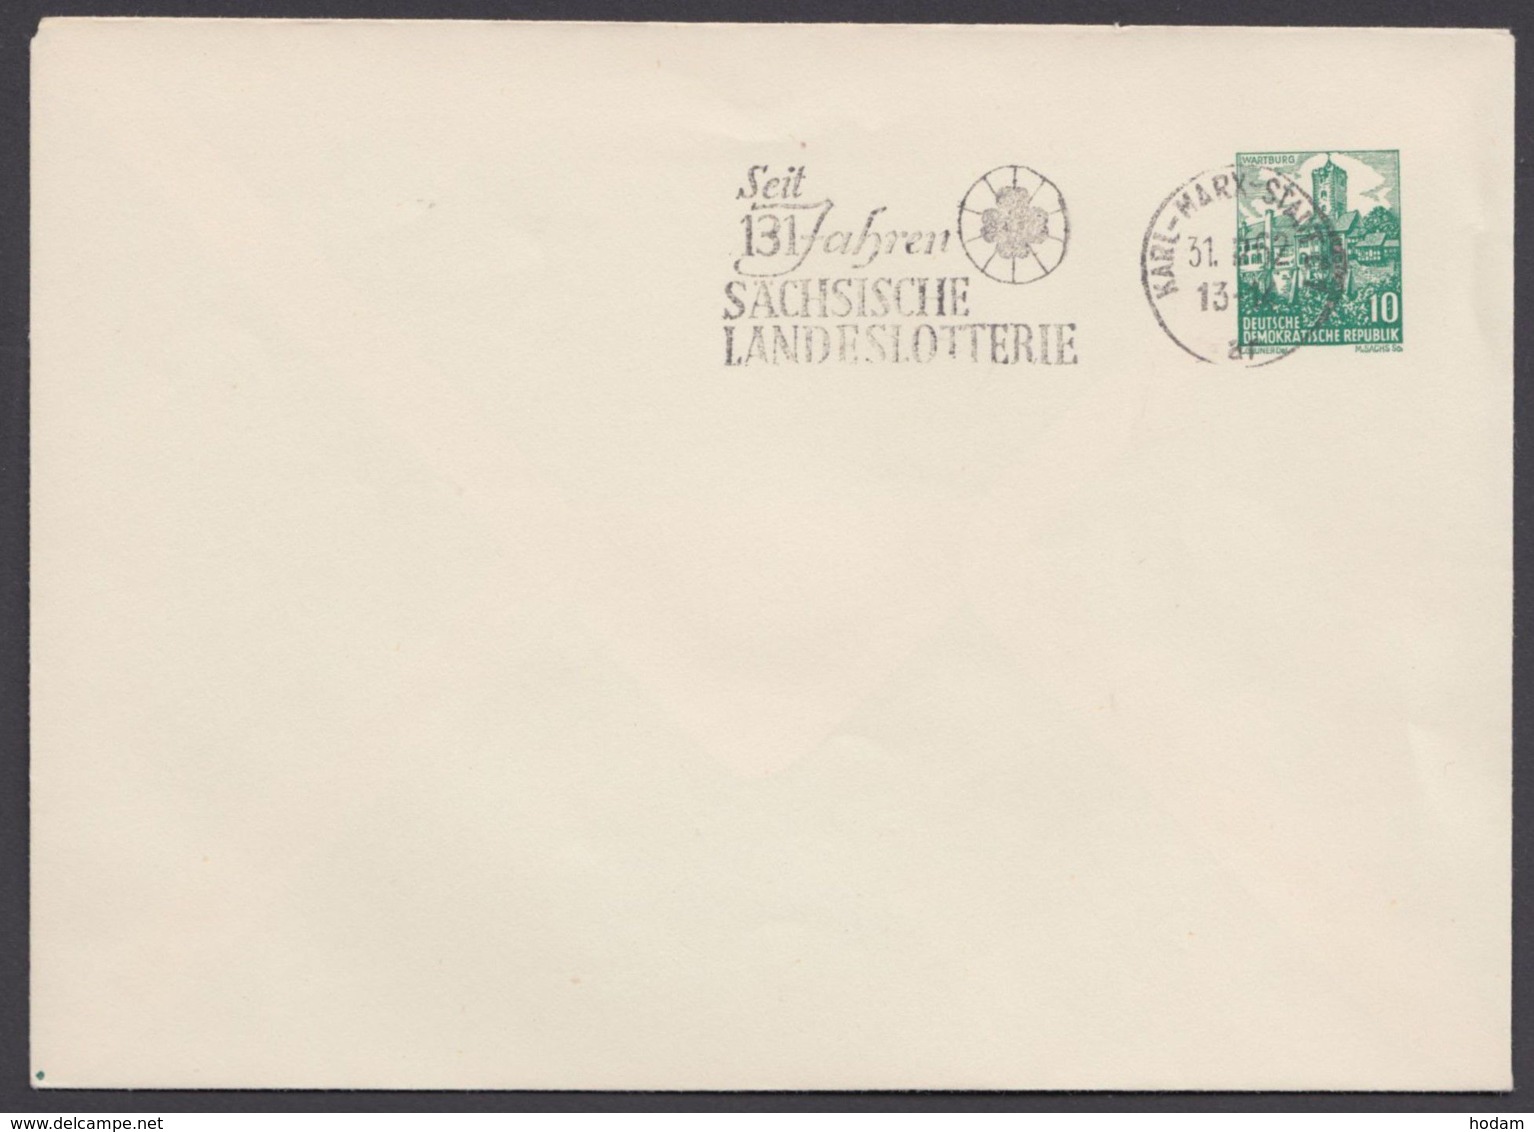 Mi- Nr. PU 13 A1/01, Blankoumschlag, Werbestempel "sächsische Landeslotterie", 1962 - Privatumschläge - Gebraucht